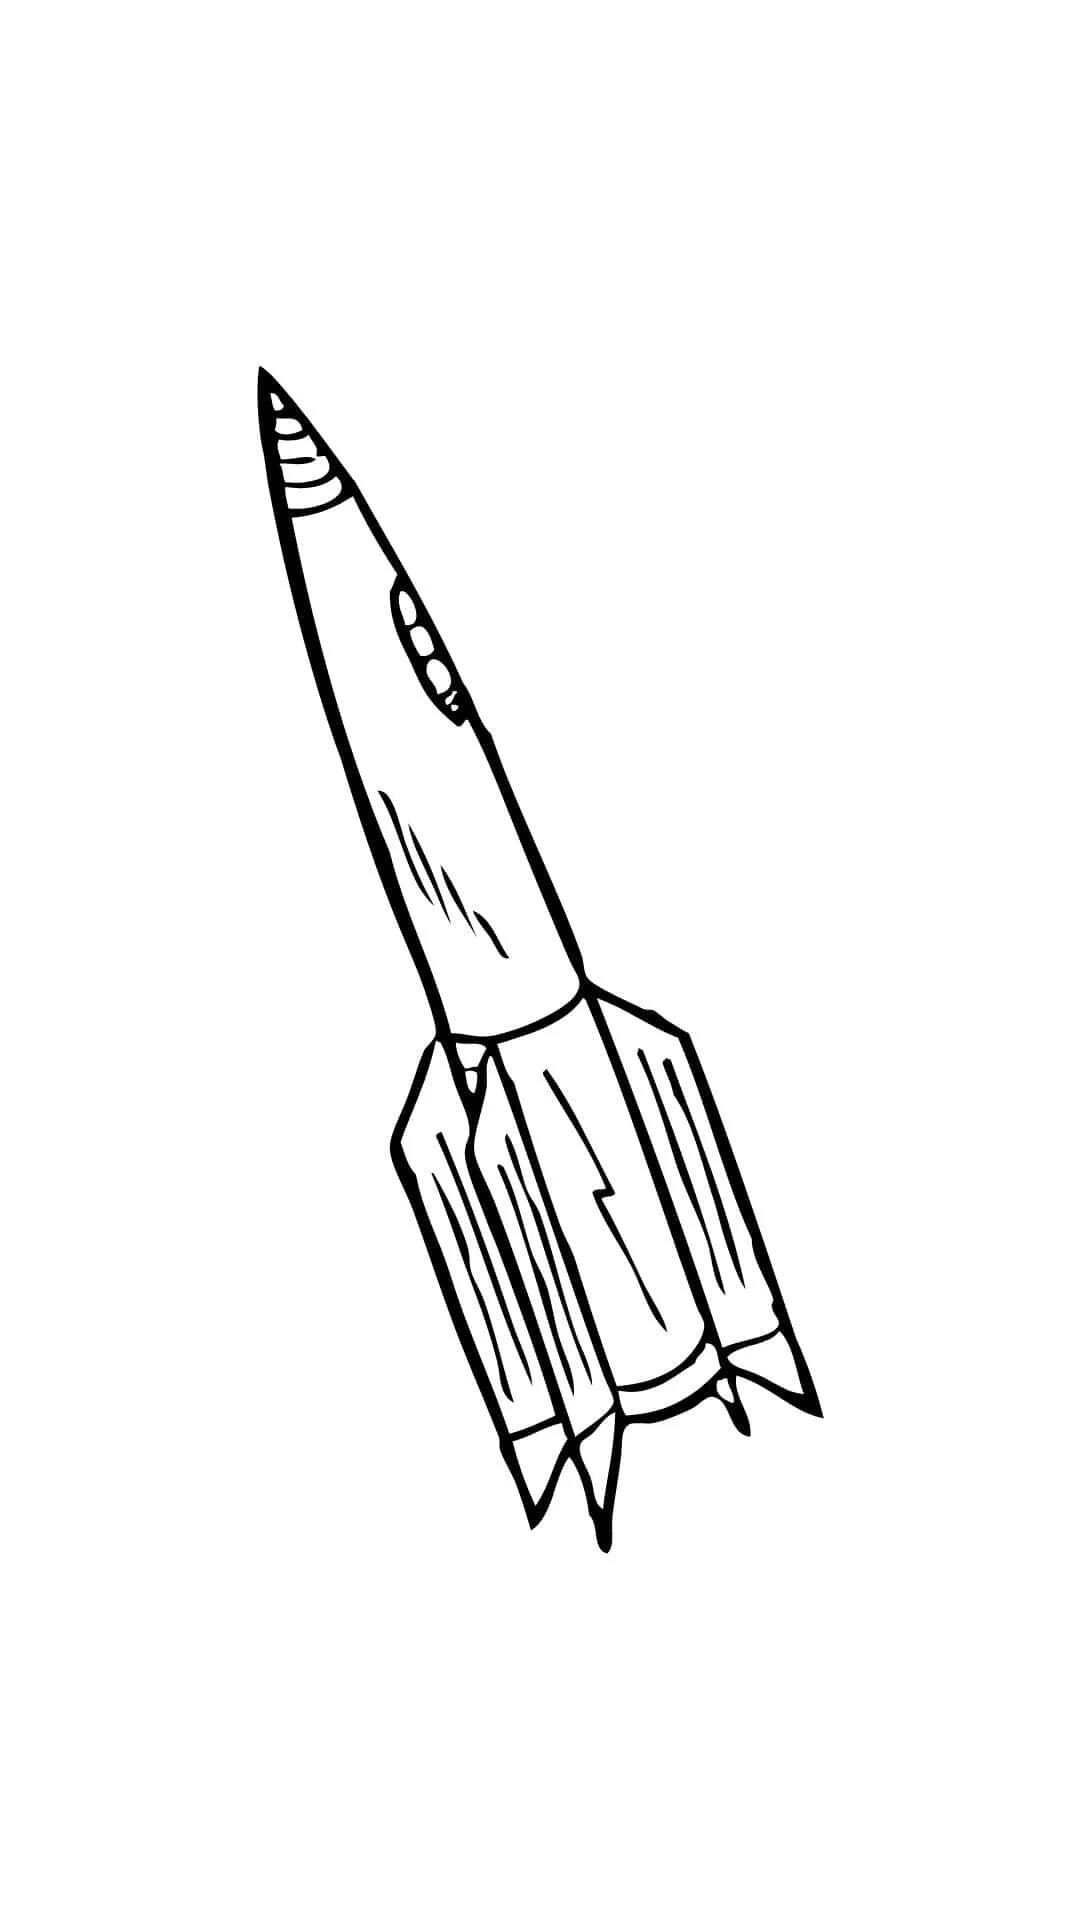 Покажи как нарисовать ракету. Ракета раскраска. Космическая ракета рисунок карандашом. Ракета раскраска для детей. Космический корабль раскраска.